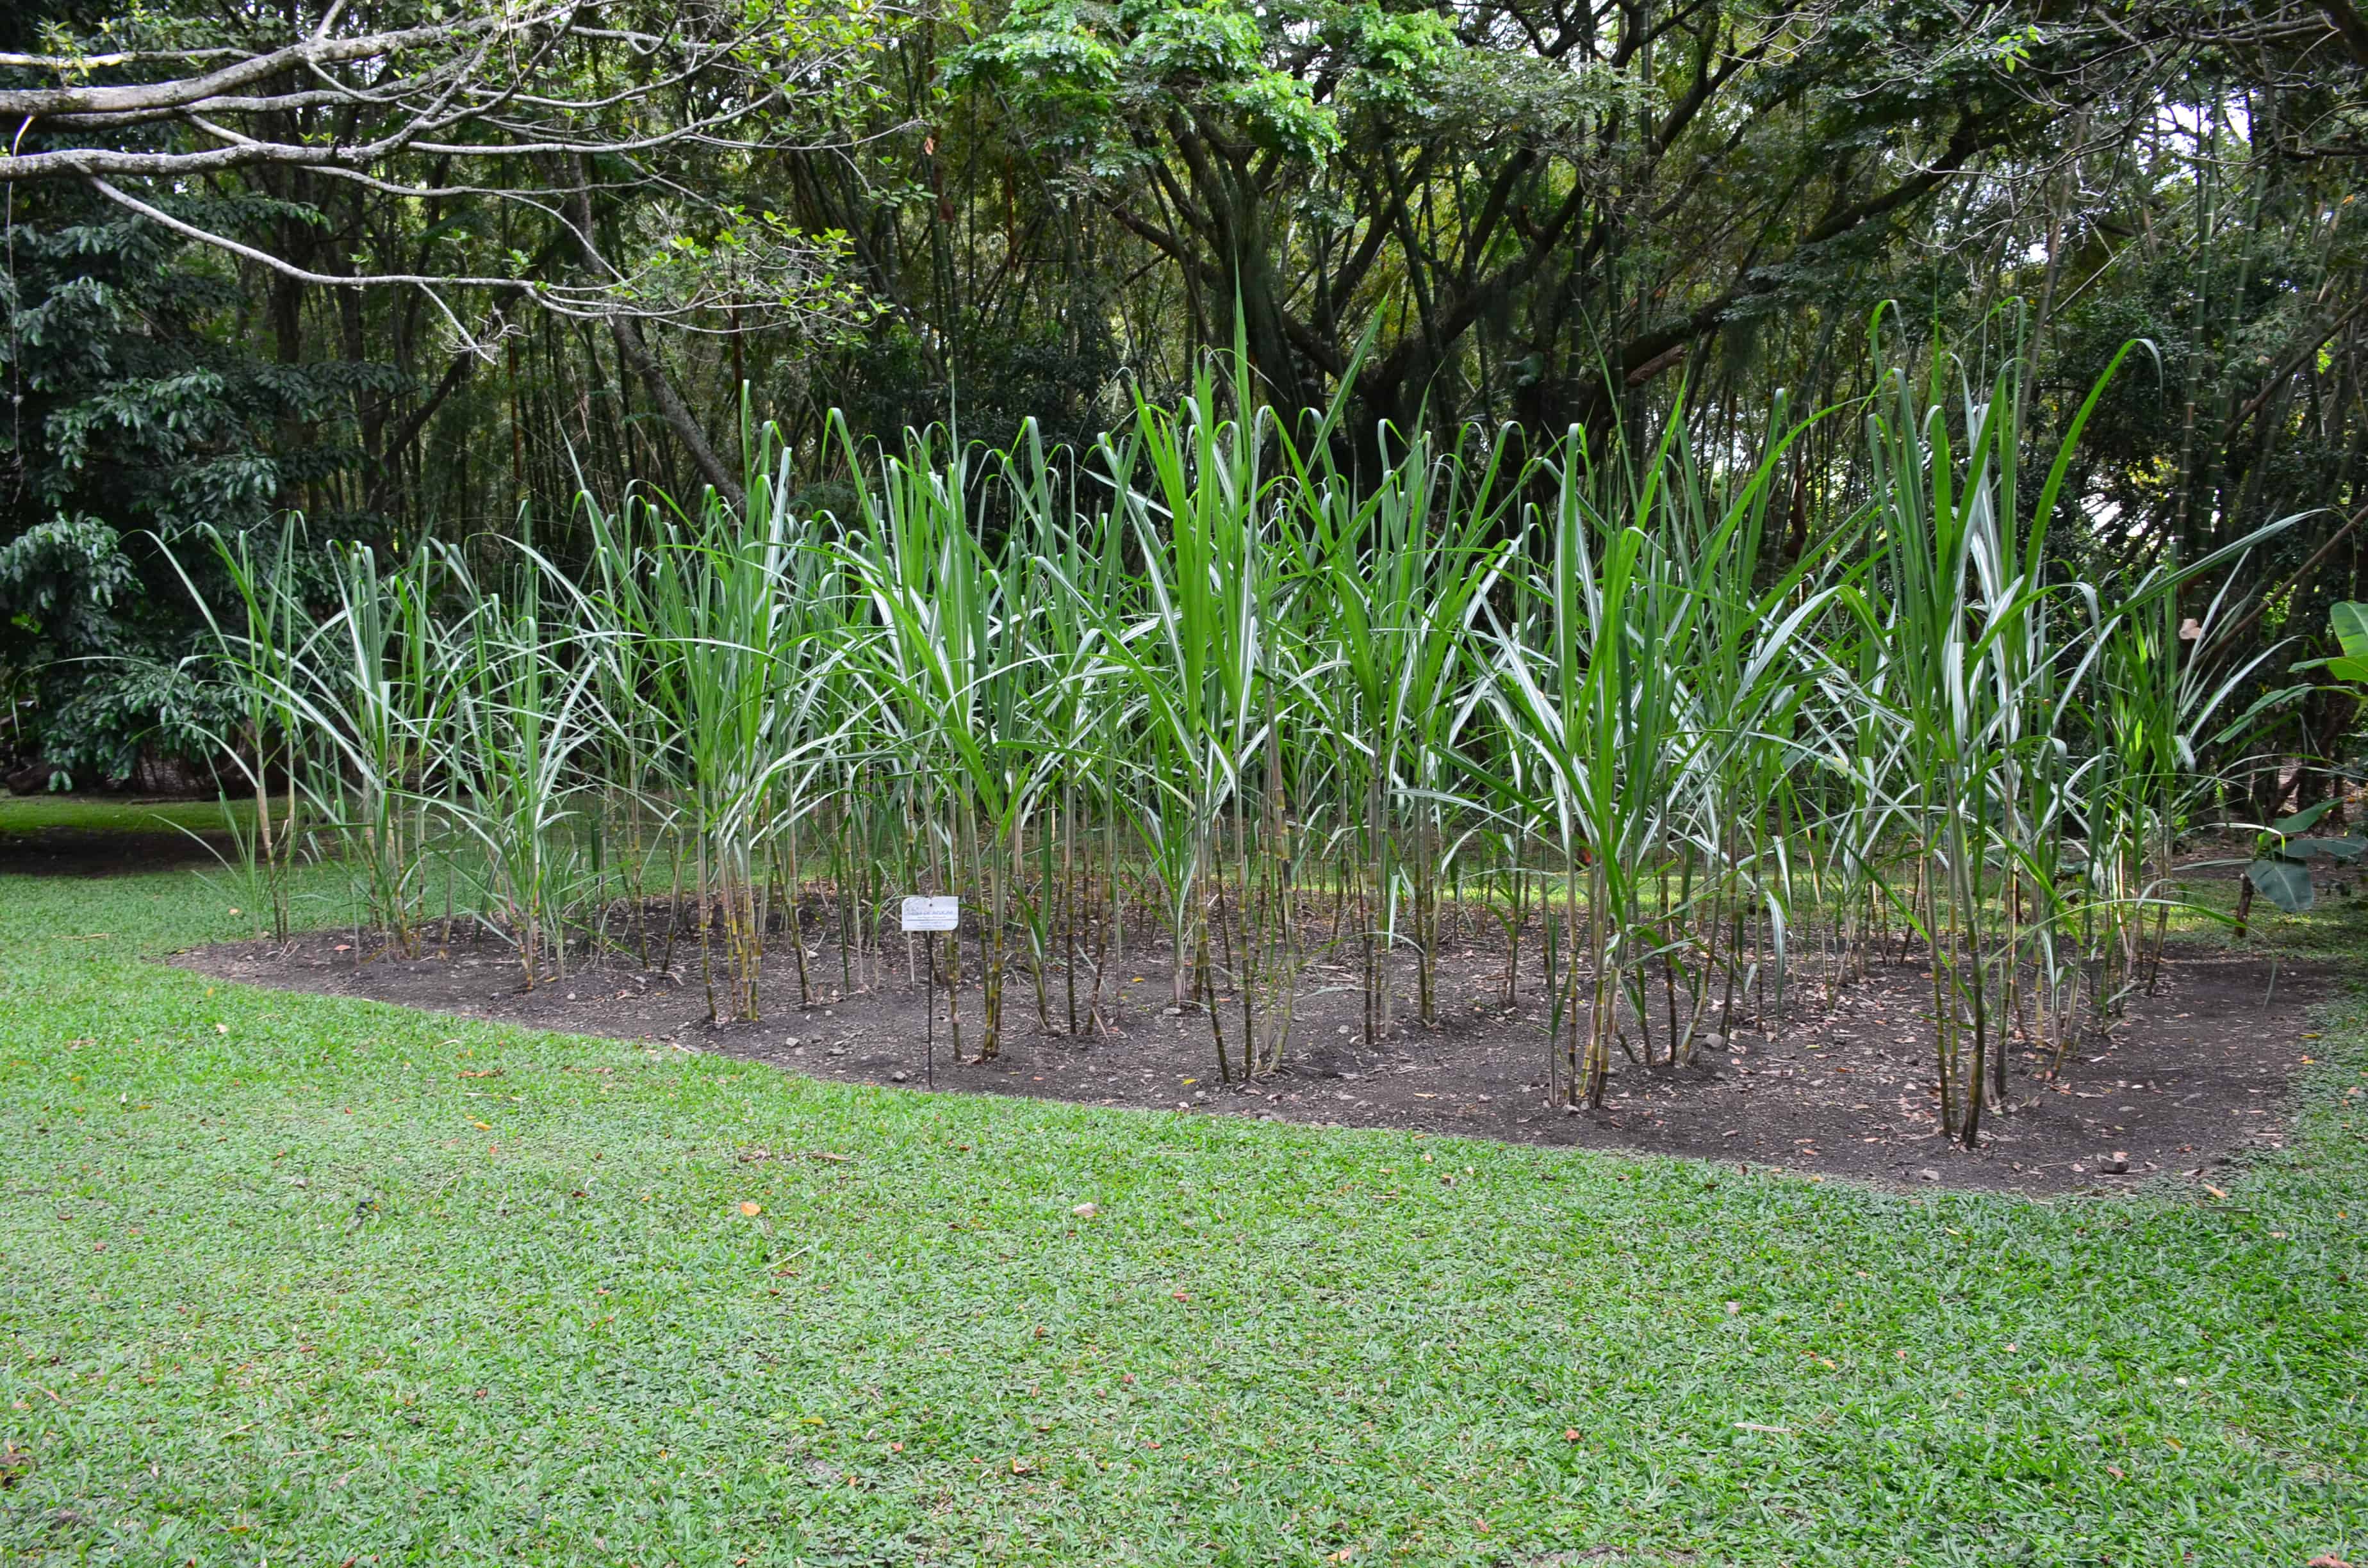 Sugar cane at Museo de la Caña in Valle del Cauca, Colombia